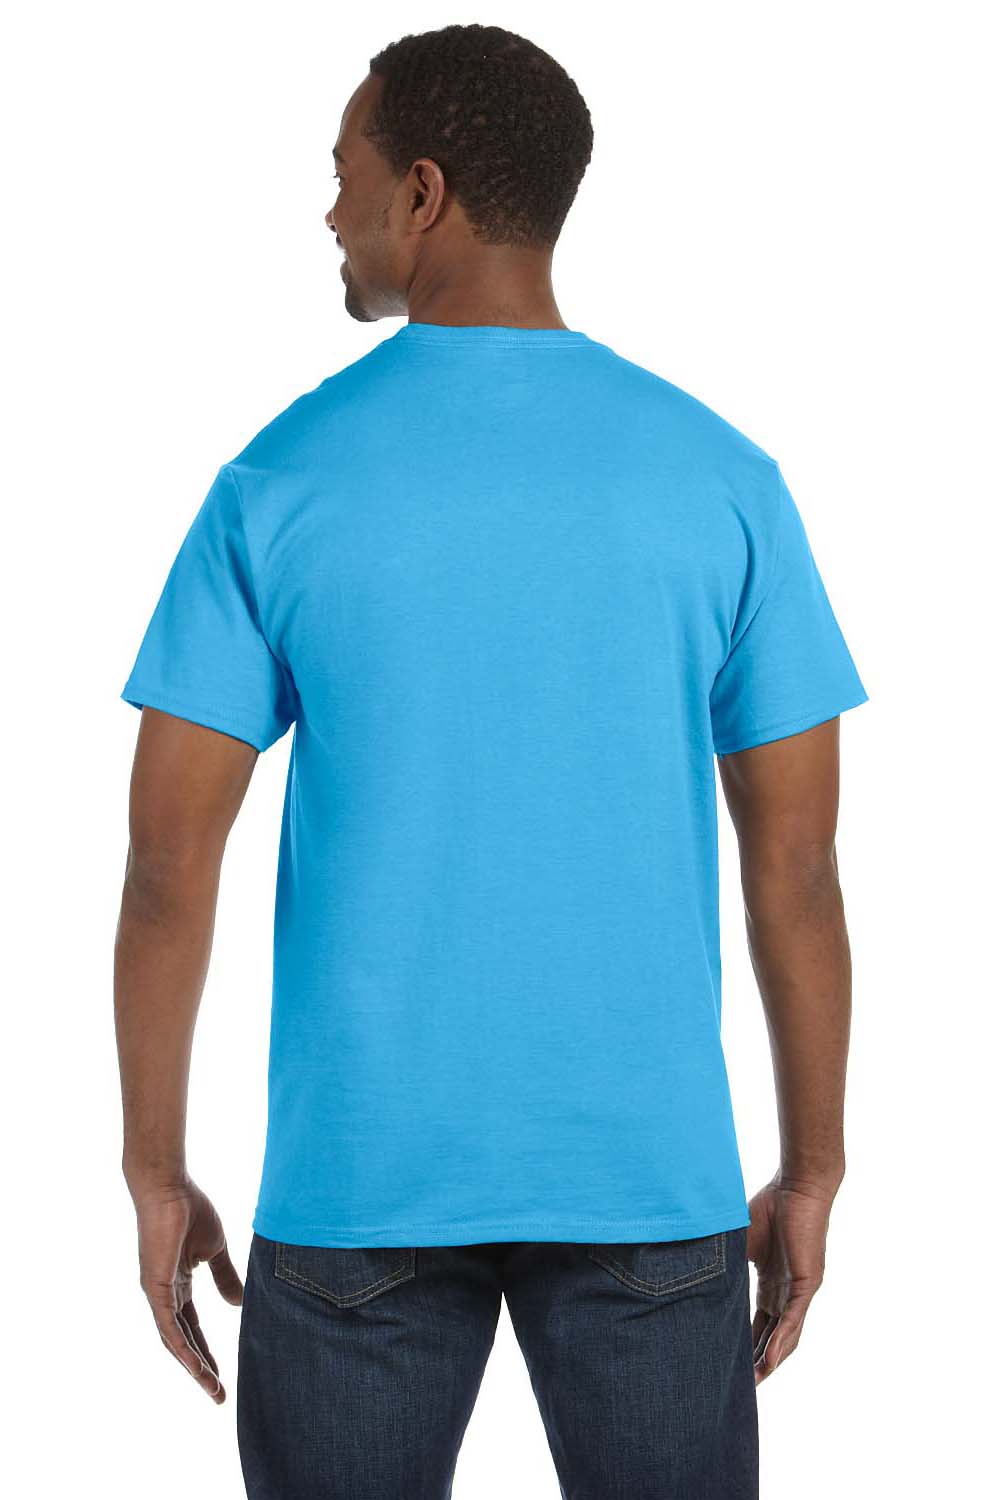 Hanes 5250T Mens ComfortSoft Short Sleeve Crewneck T-Shirt Aquatic Blue Back